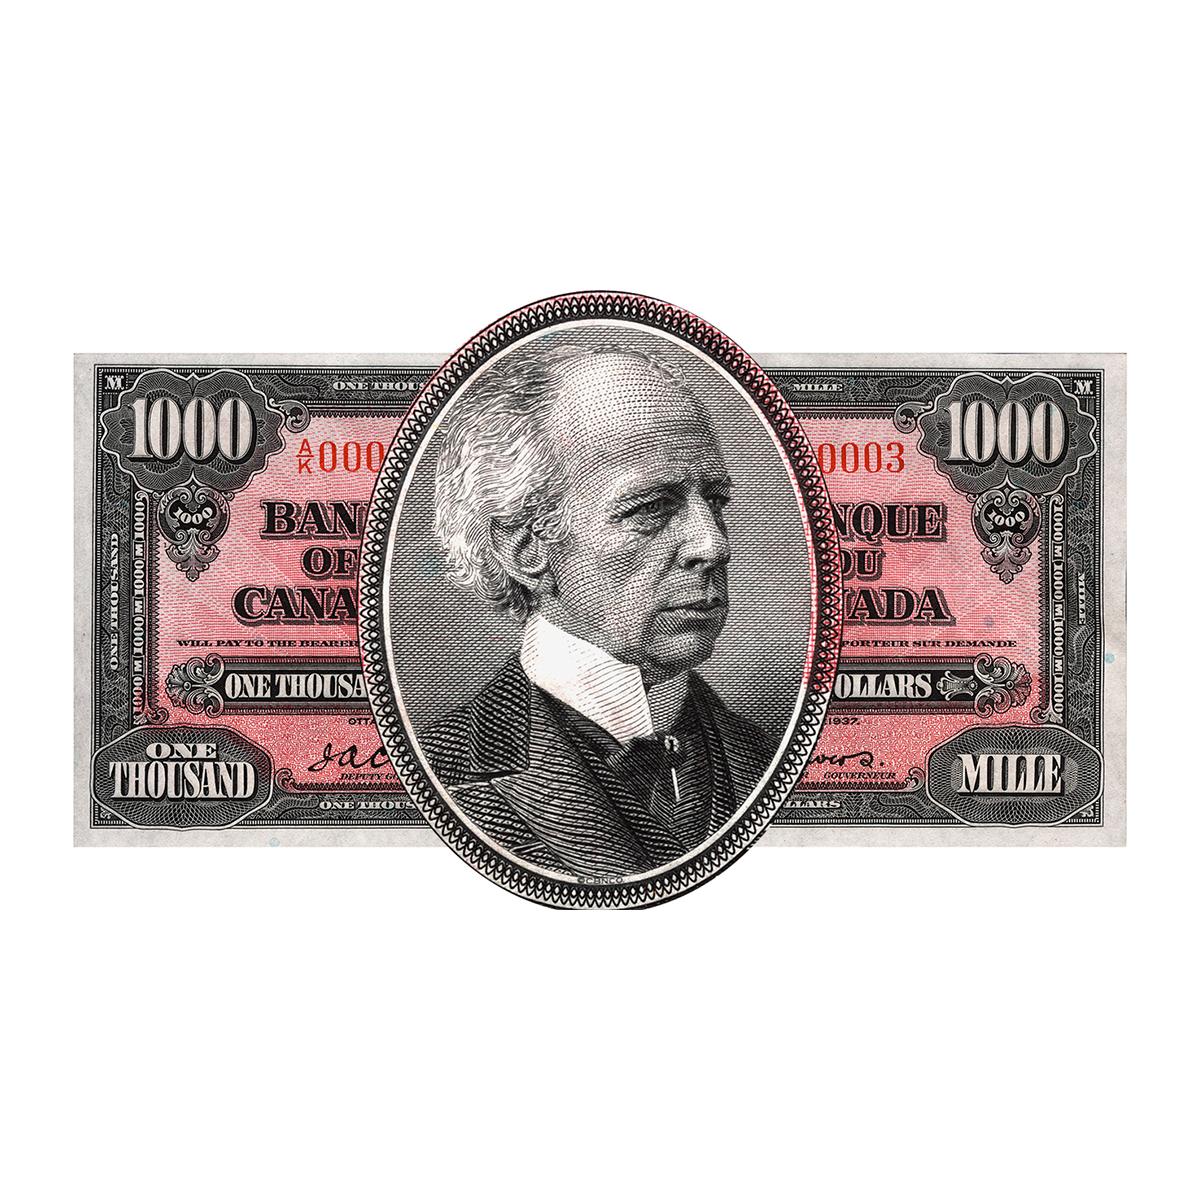 Portrait sur un billet de banque d’un homme aux cheveux ondulés atteint de calvitie et portant un col montant.